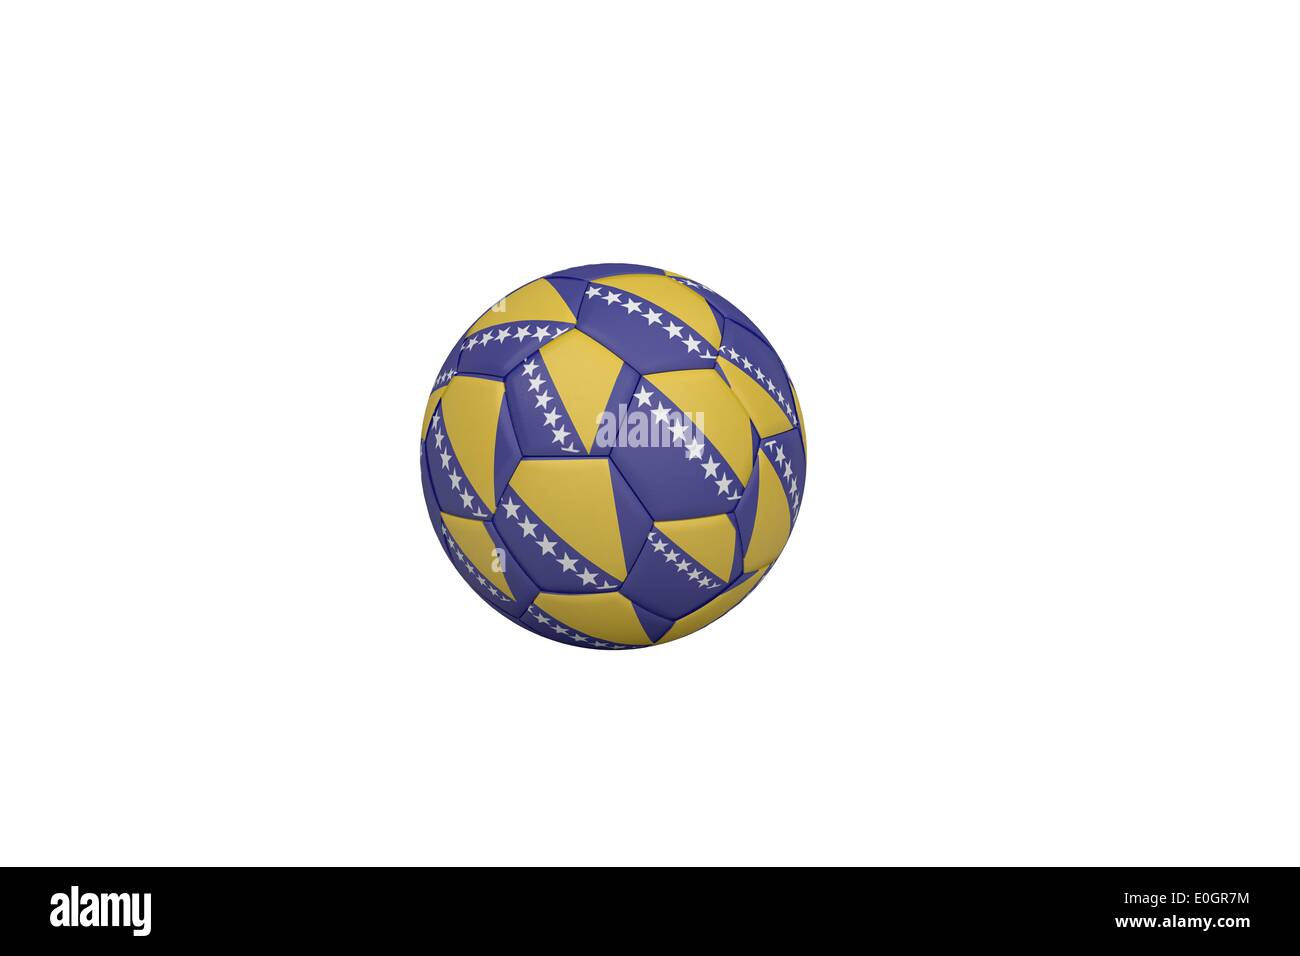 En football couleurs bosniaque Banque D'Images